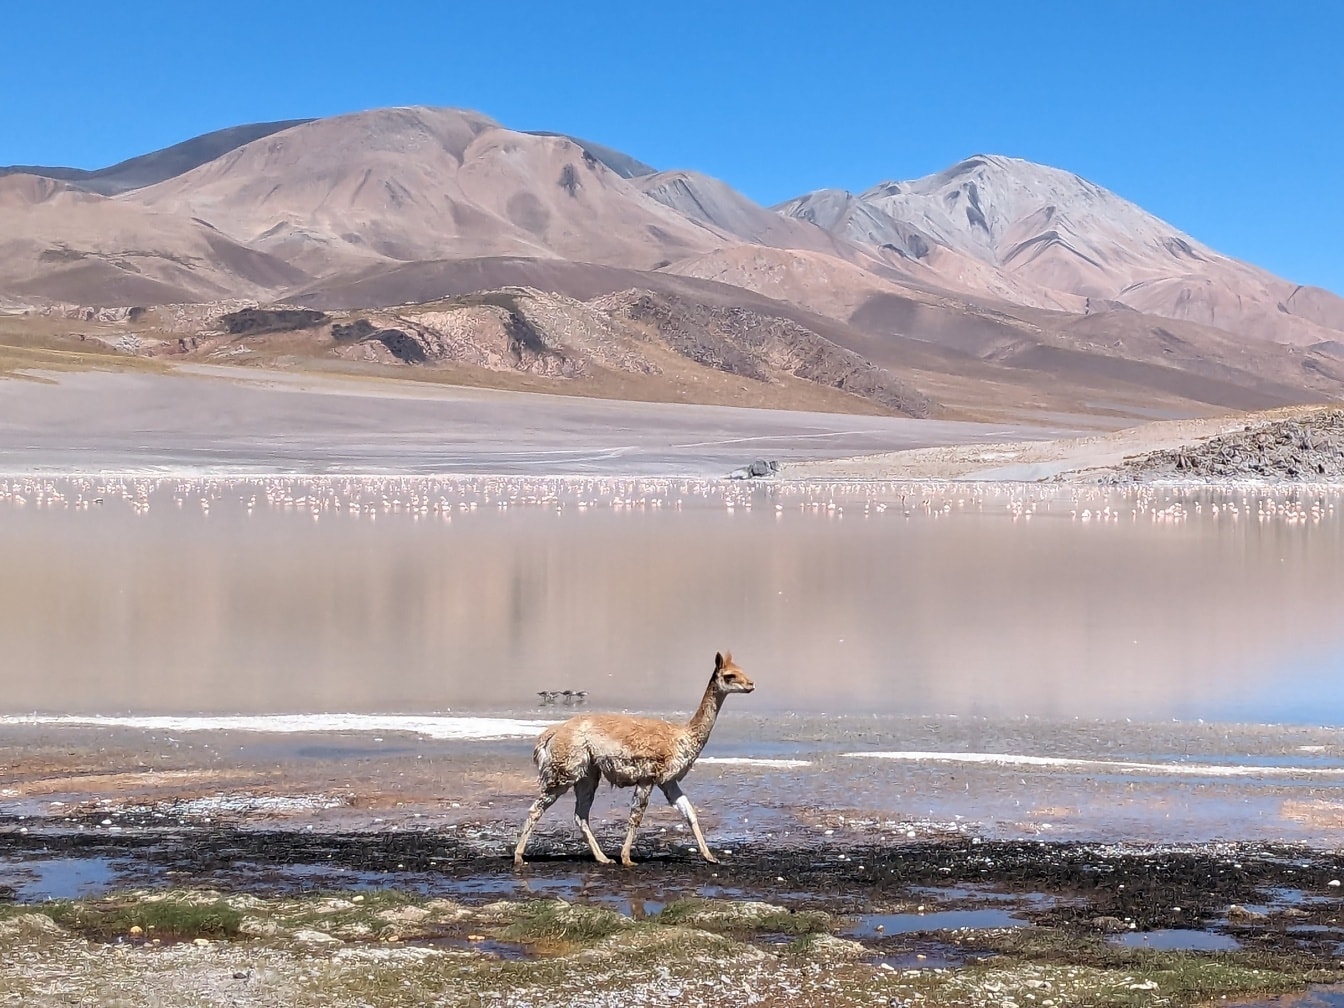 Lama selvagem caminhando no pântano de sal um oásis no deserto em seu habitat natural